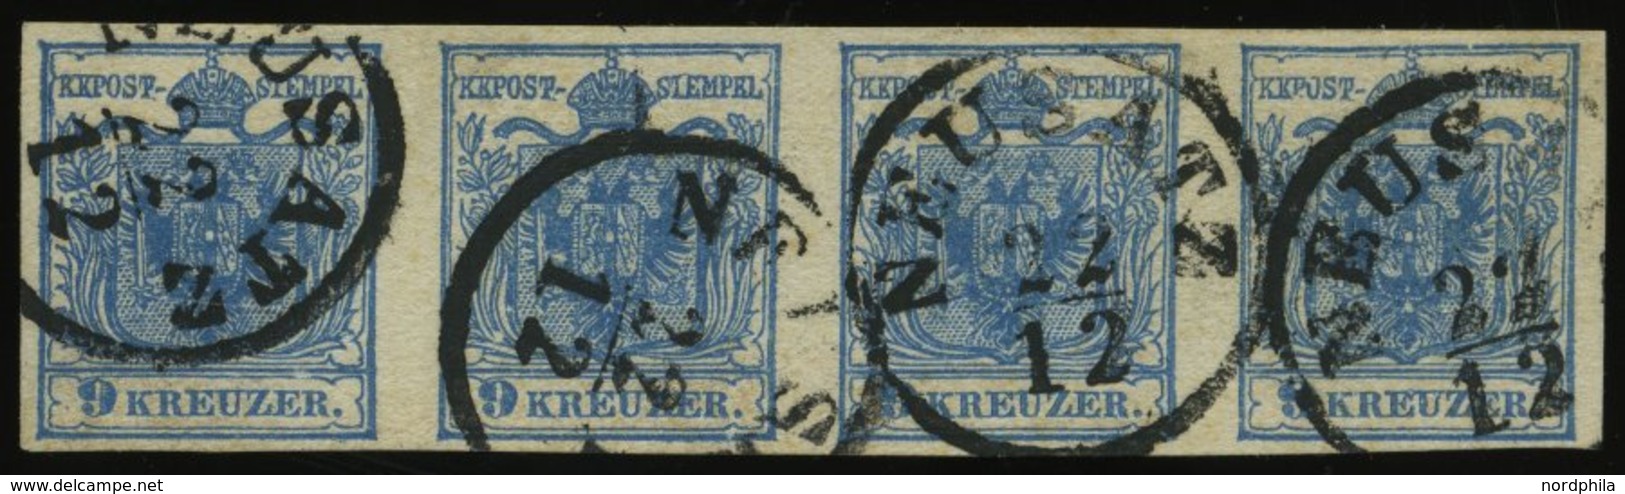 ÖSTERREICH 5Y O, 1854, 9 Kr. Blau, Maschinenpapier, Type IIIb, Im Waagerechten Viererstreifen, K1 NEUSATZ, Pracht, Fotoa - Usados